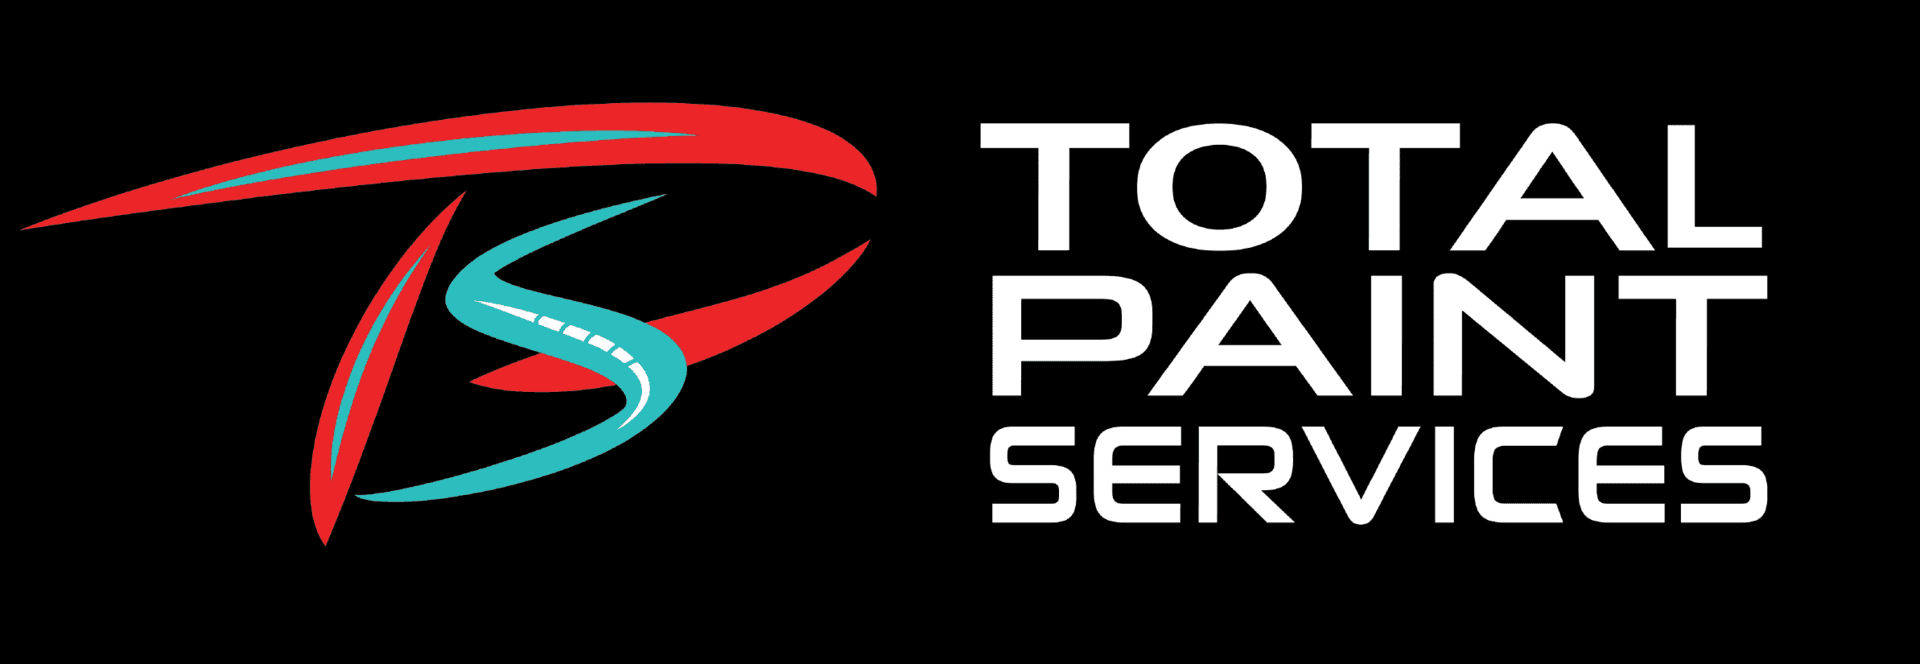 Total Paint Services